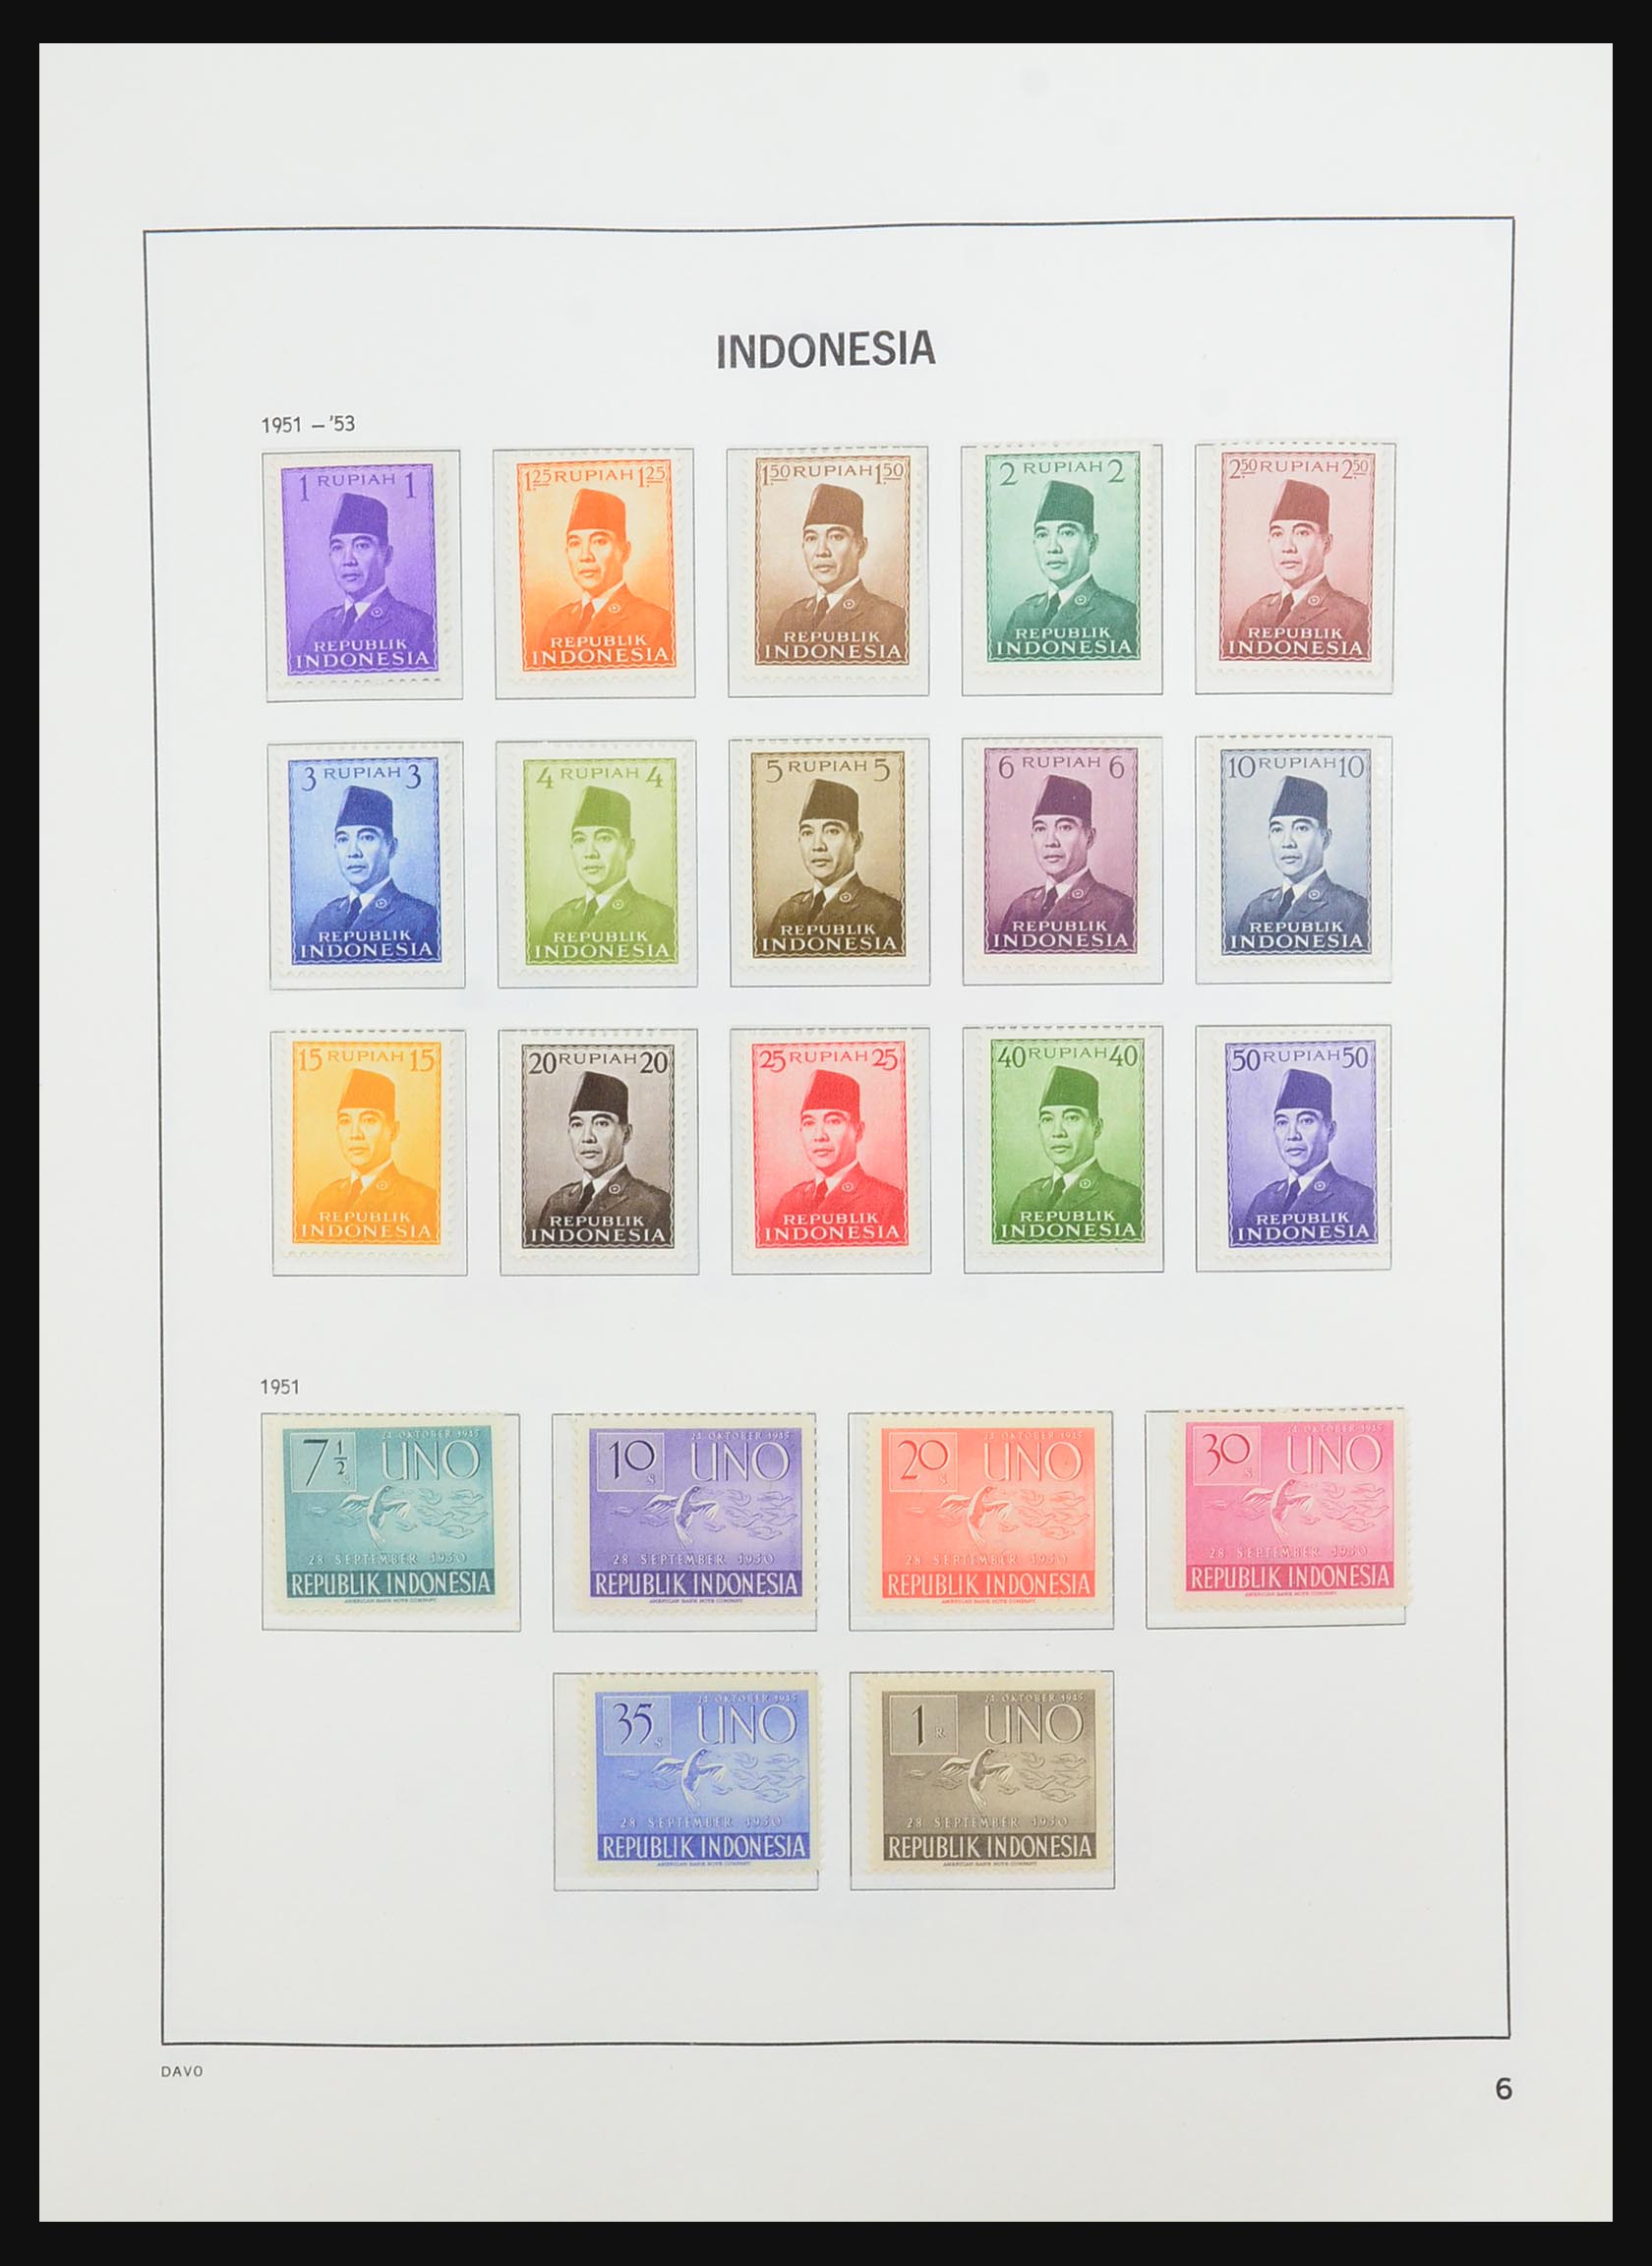 31521 004 - 31521 Indonesia 1949-2005.